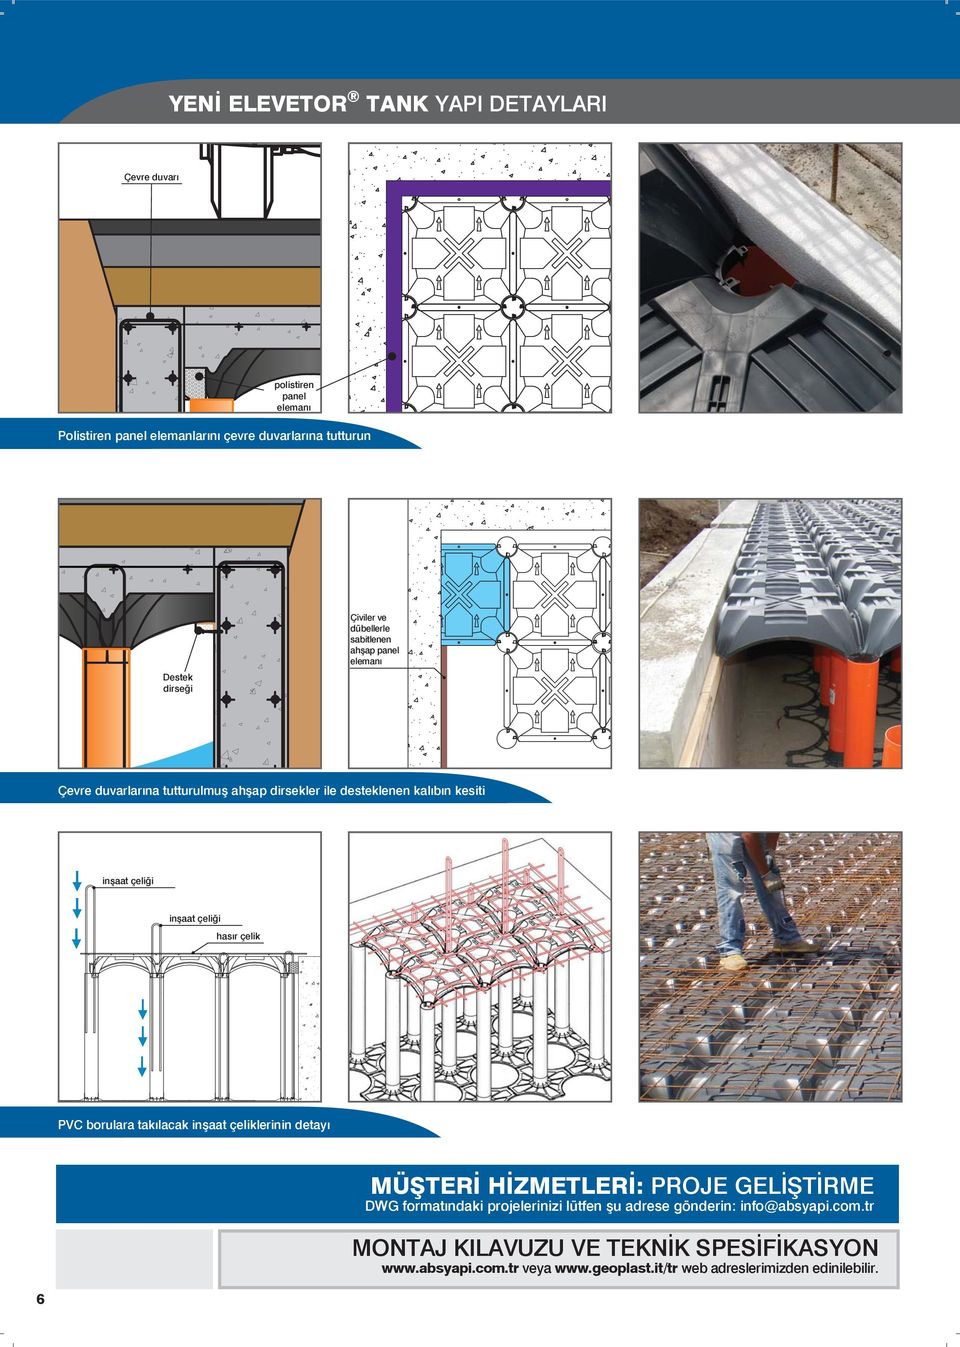 inşaat çeliği hasır çelik PVC borulara takılacak inşaat çeliklerinin detayı MÜŞTERİ HİZMETLERİ: PROJE GELİŞTİRME DWG formatındaki projelerinizi